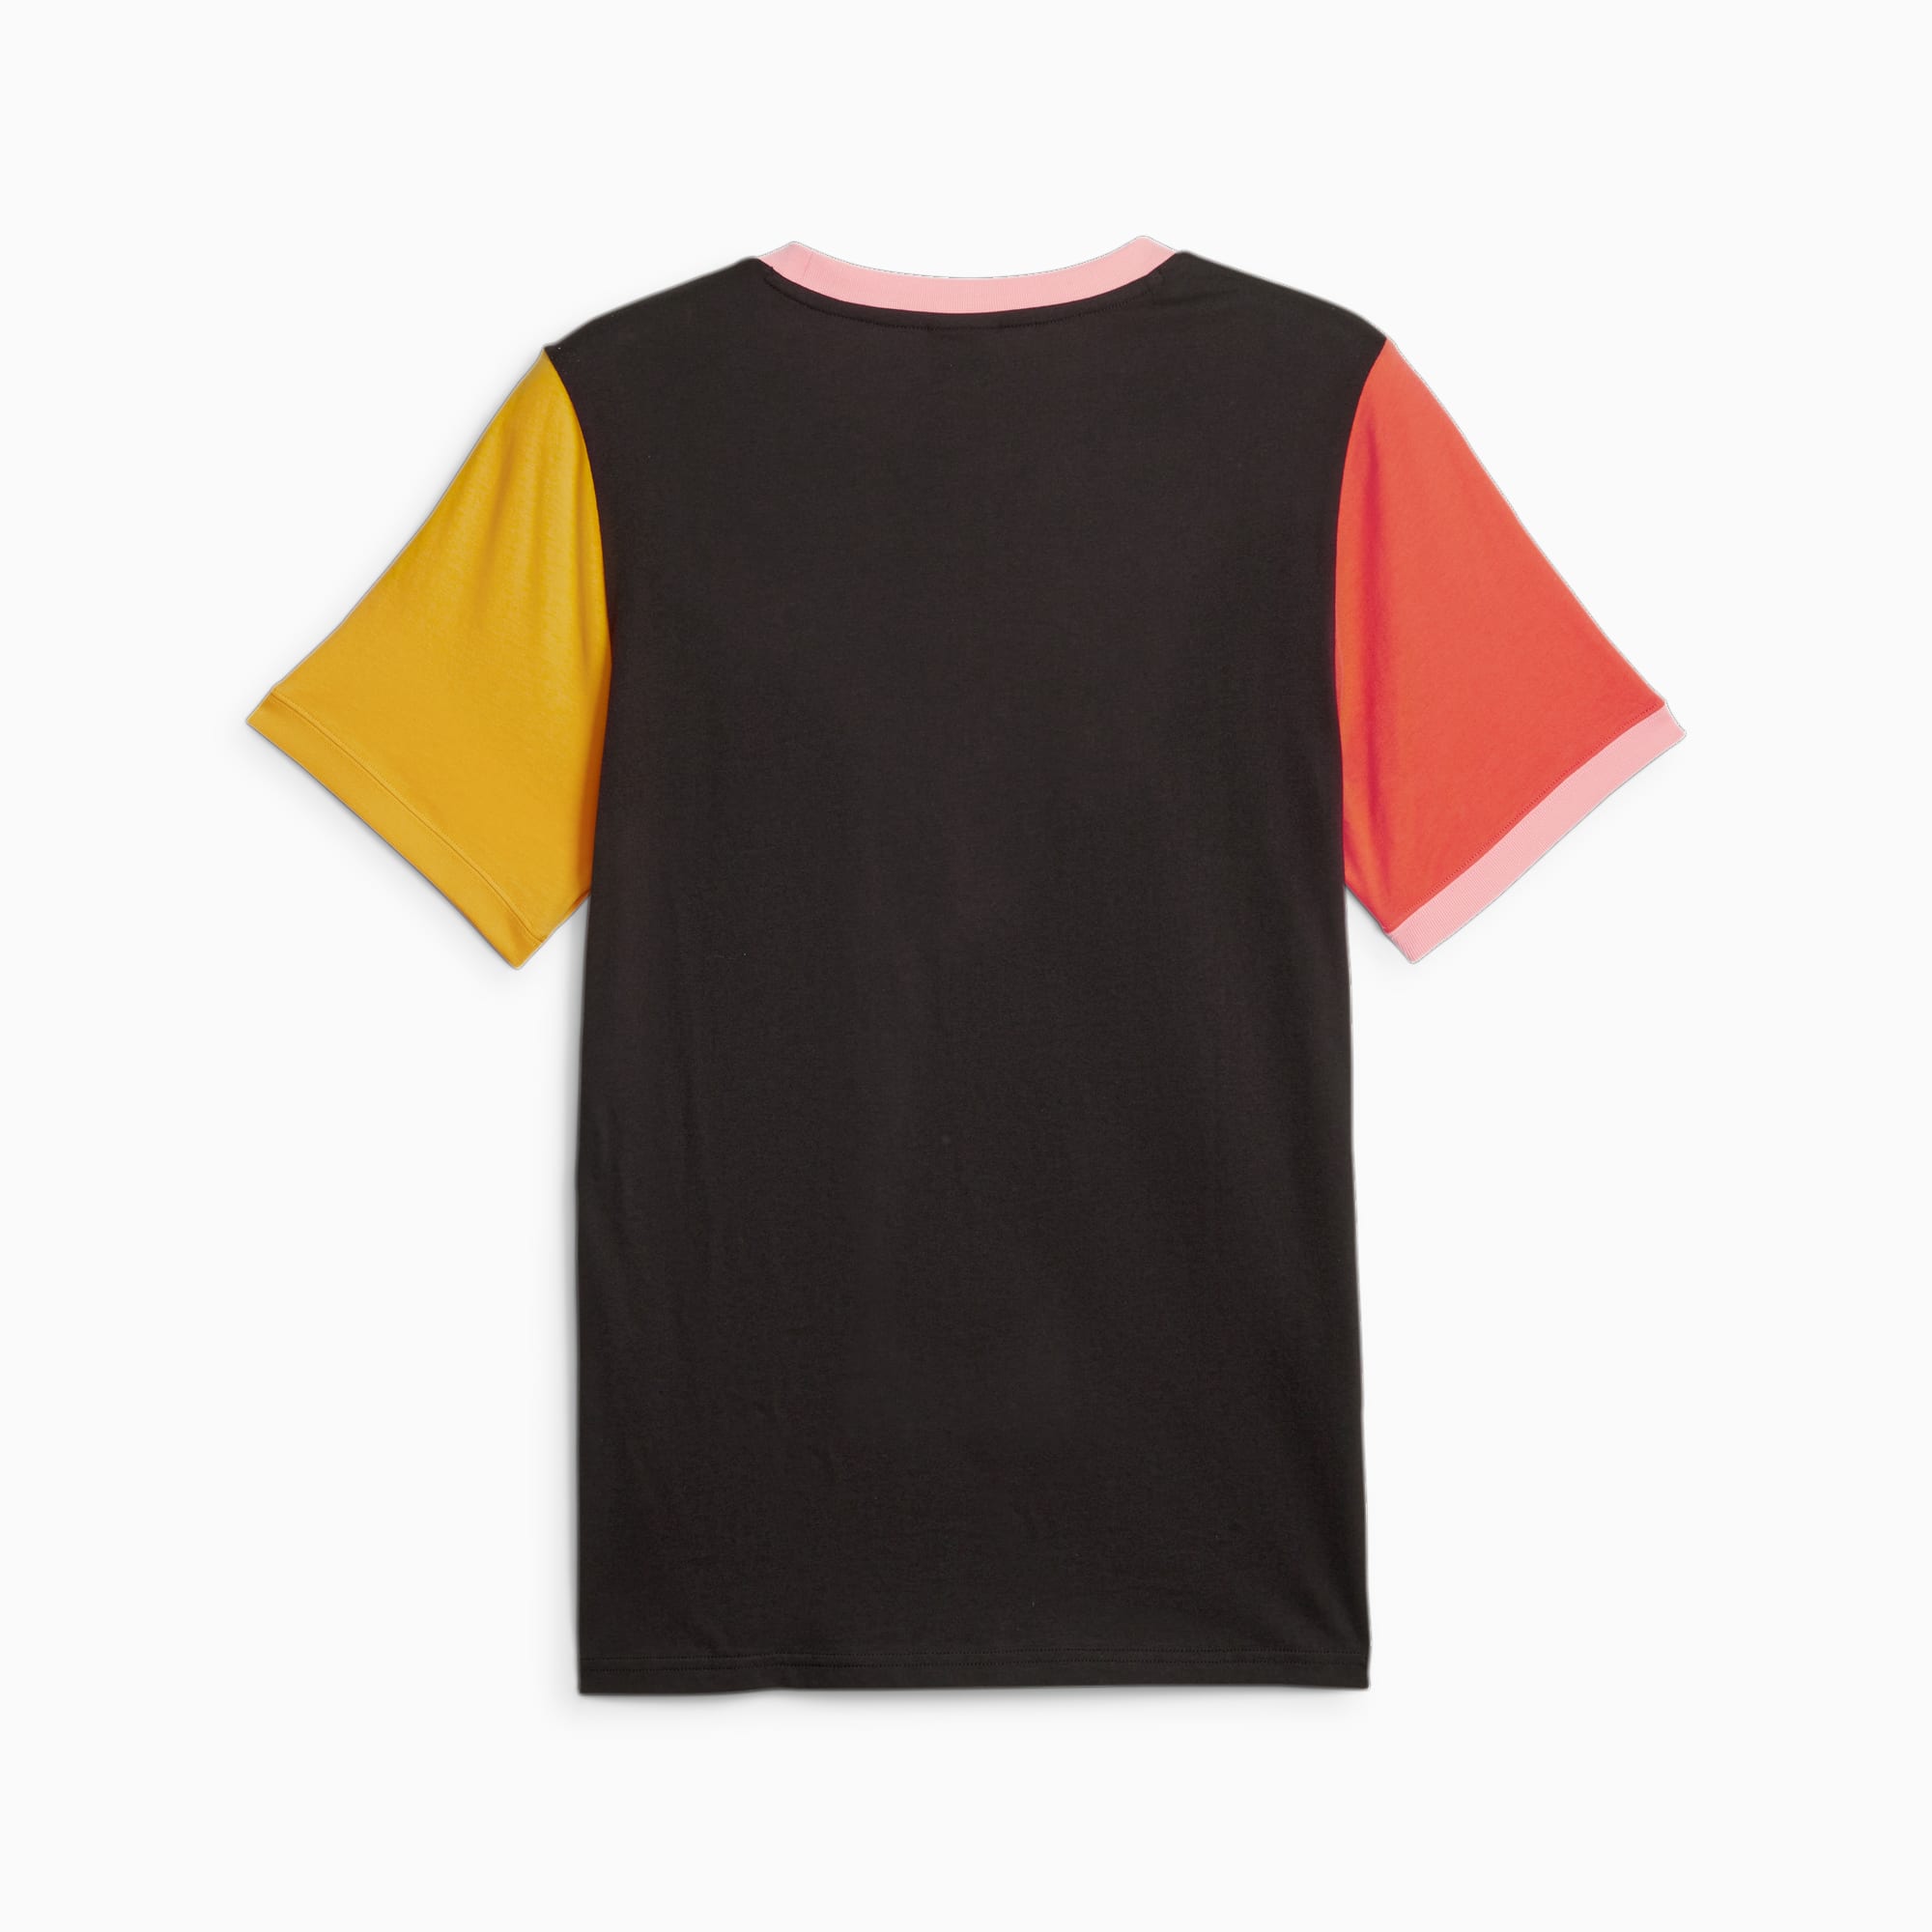 Classici Block T-Shirt Da Uomo, Arancione/Nero/Altro